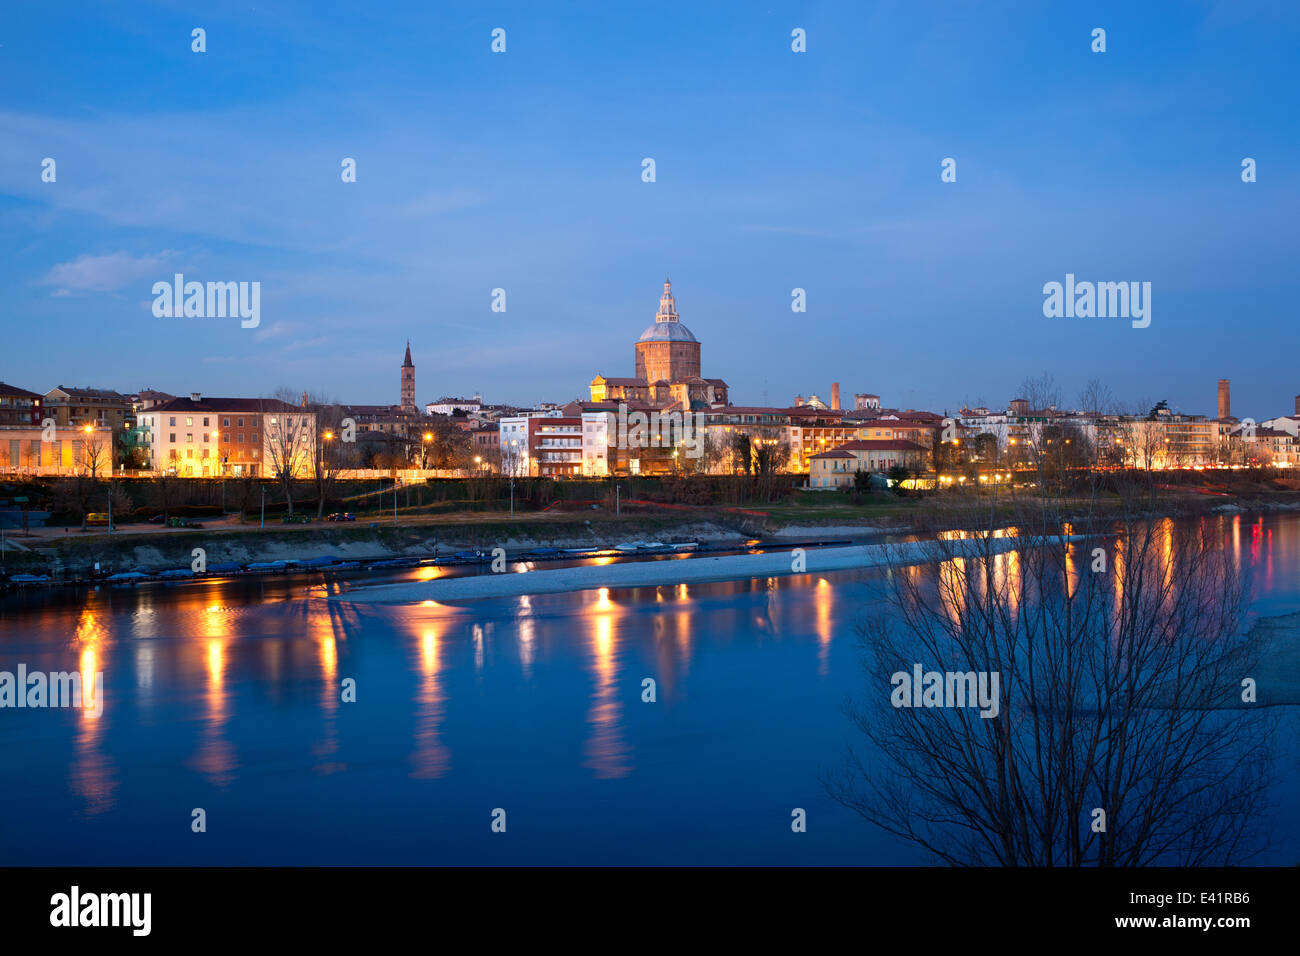 Pavia, Italy : illuminated city on Ticino river Stock Photo